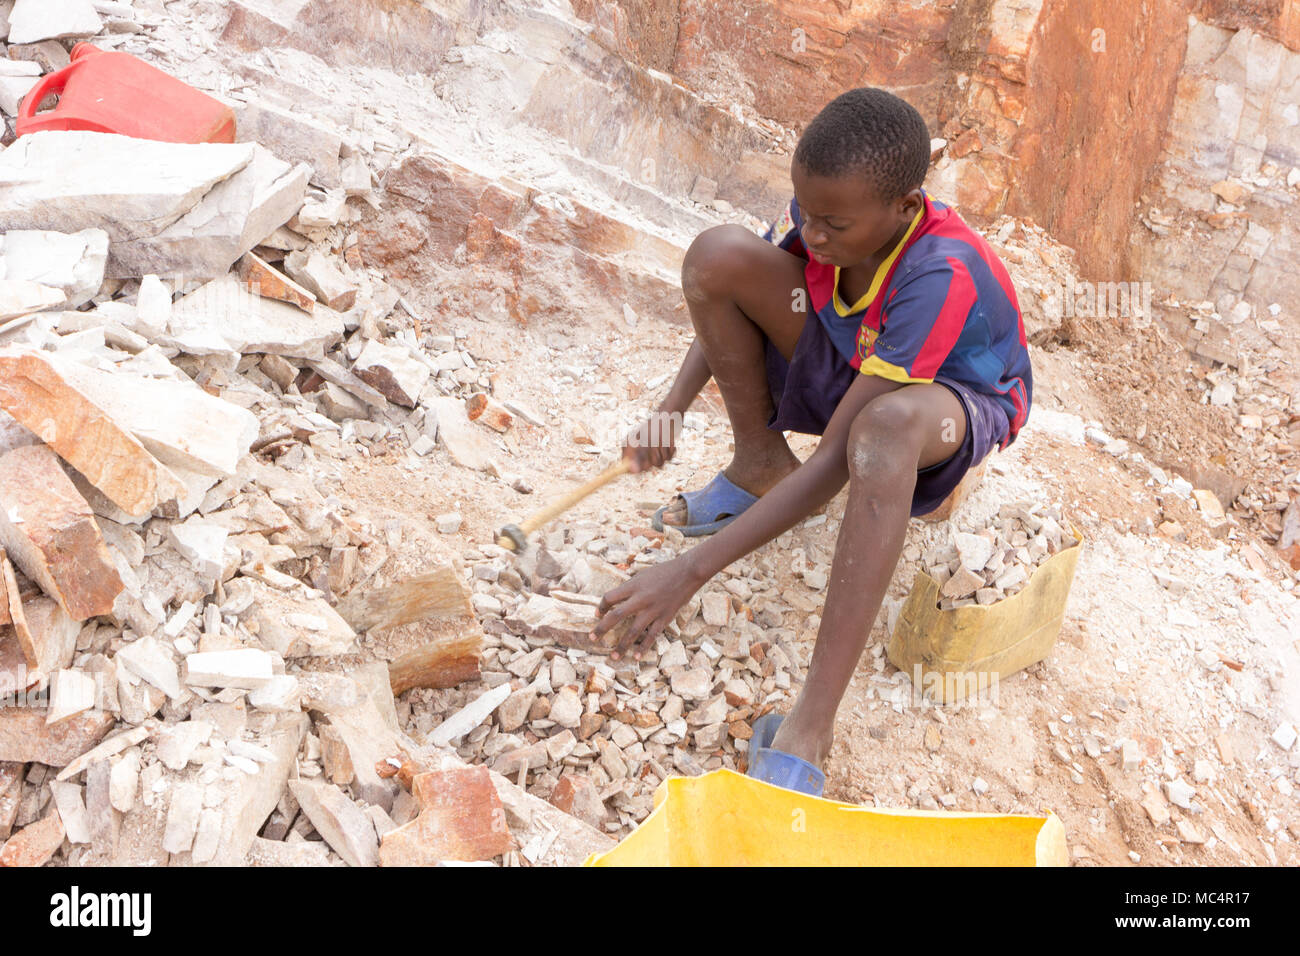 Lugazi, en Ouganda. 18 juin 2017. Un garçon ougandais casser des pierres dans les petites dalles à son contremaître. Fondamentalement, le travail des enfants. Banque D'Images